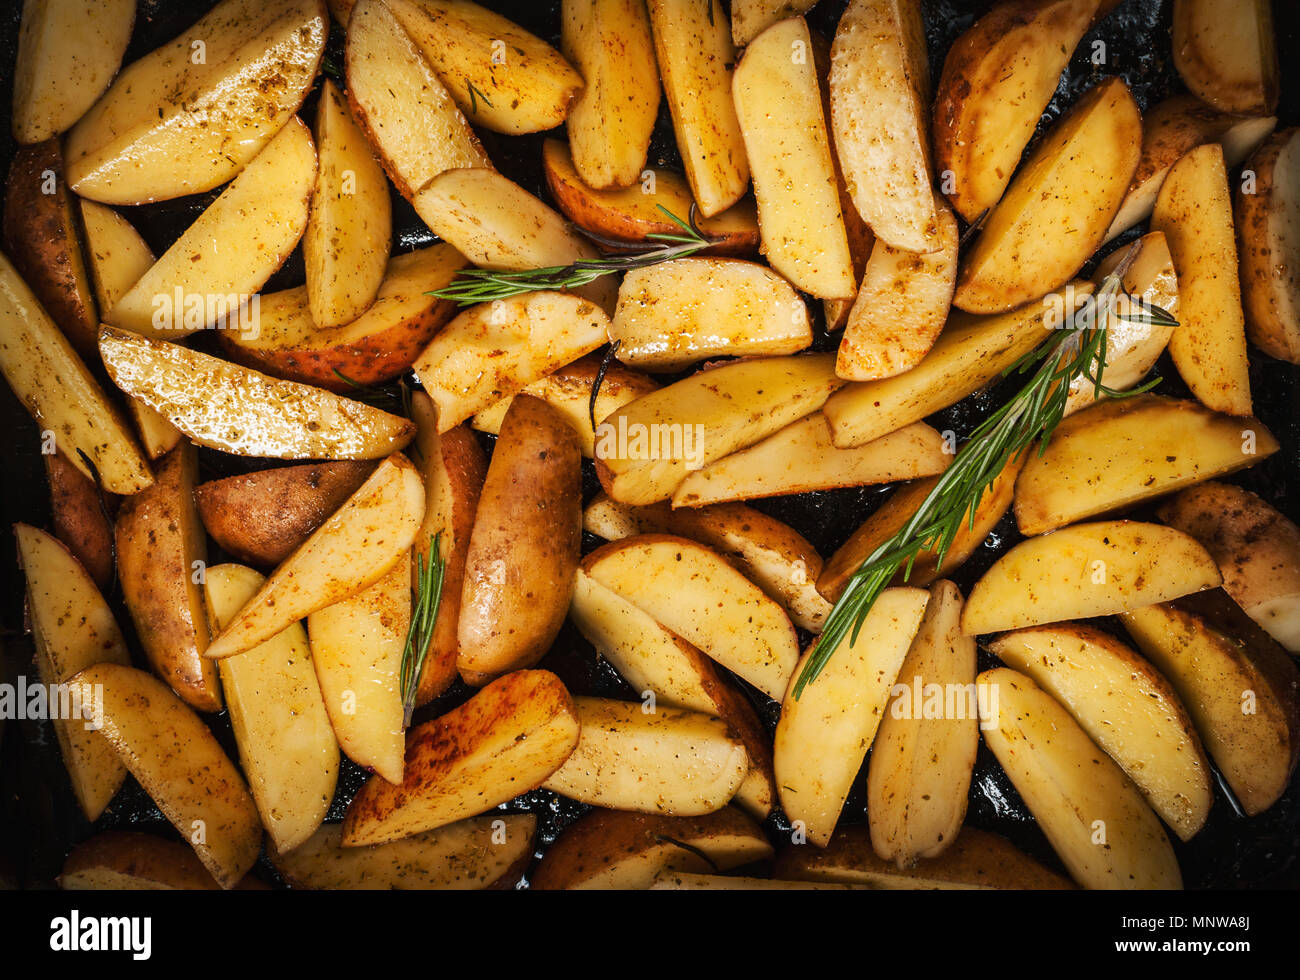 Quartiers de pommes de terre non cuites avec le romarin et le poivre. Banque D'Images